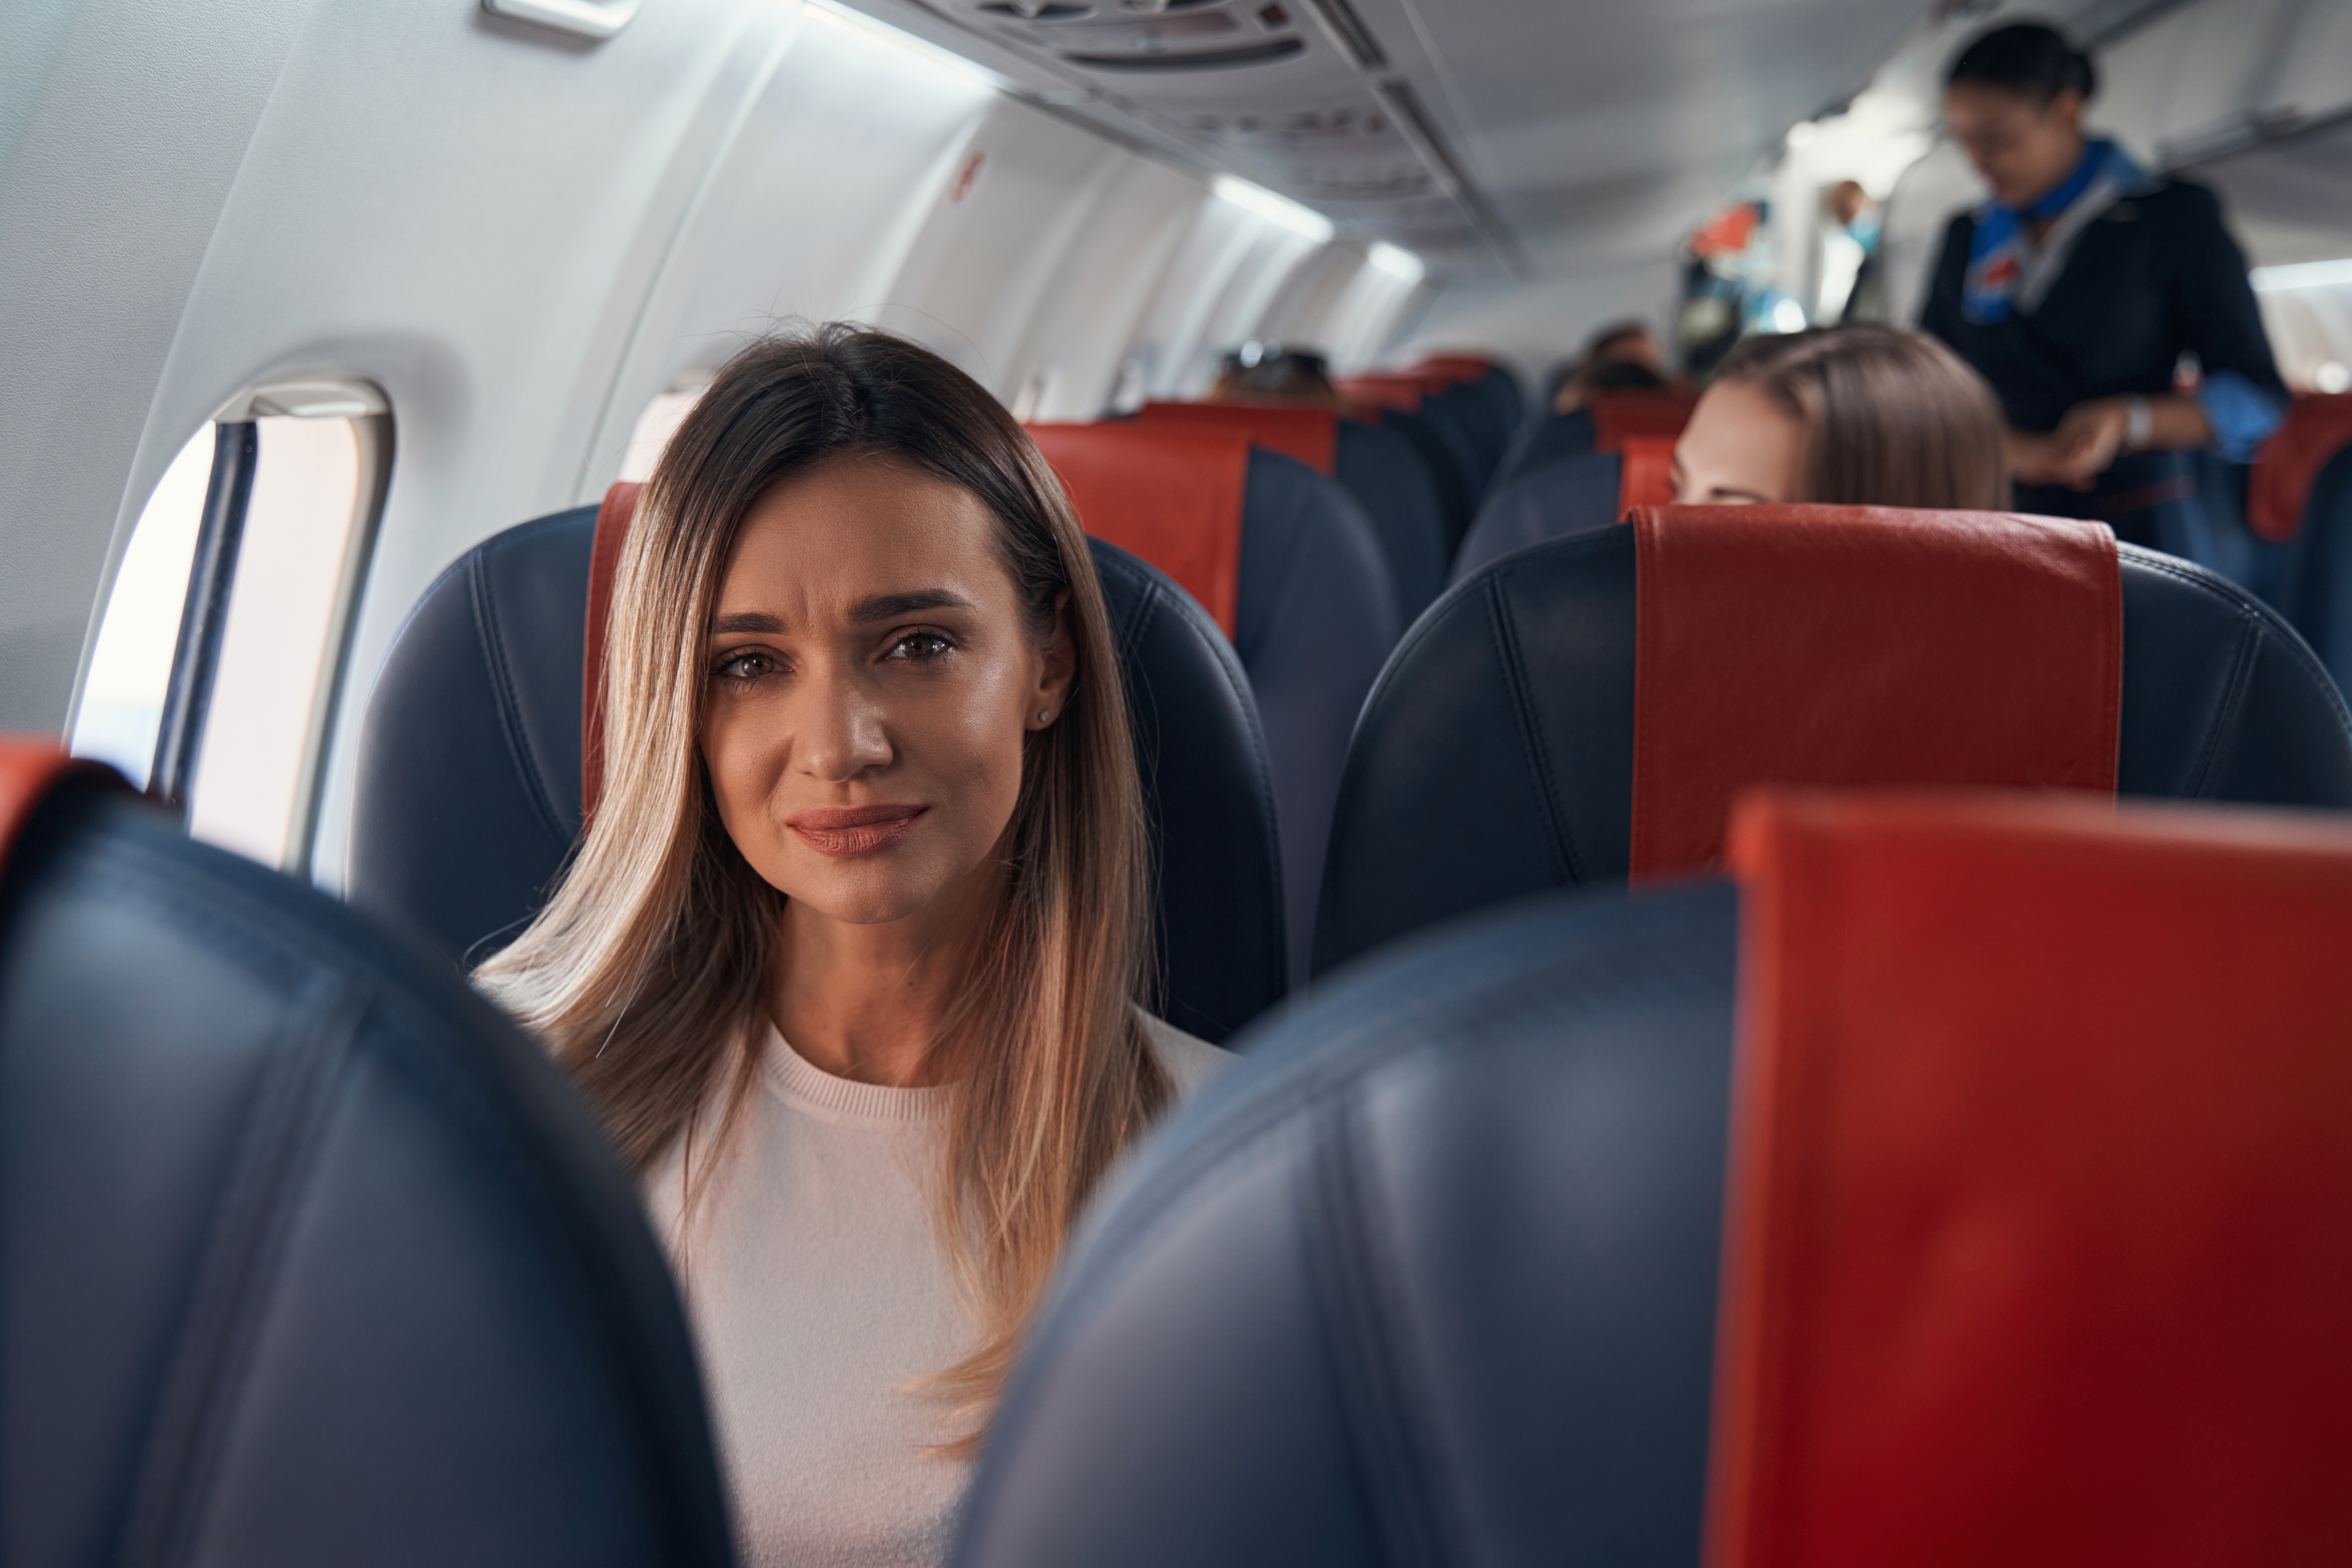 Eine traurige Frau in einem Flugzeug | Quelle: Shutterstock